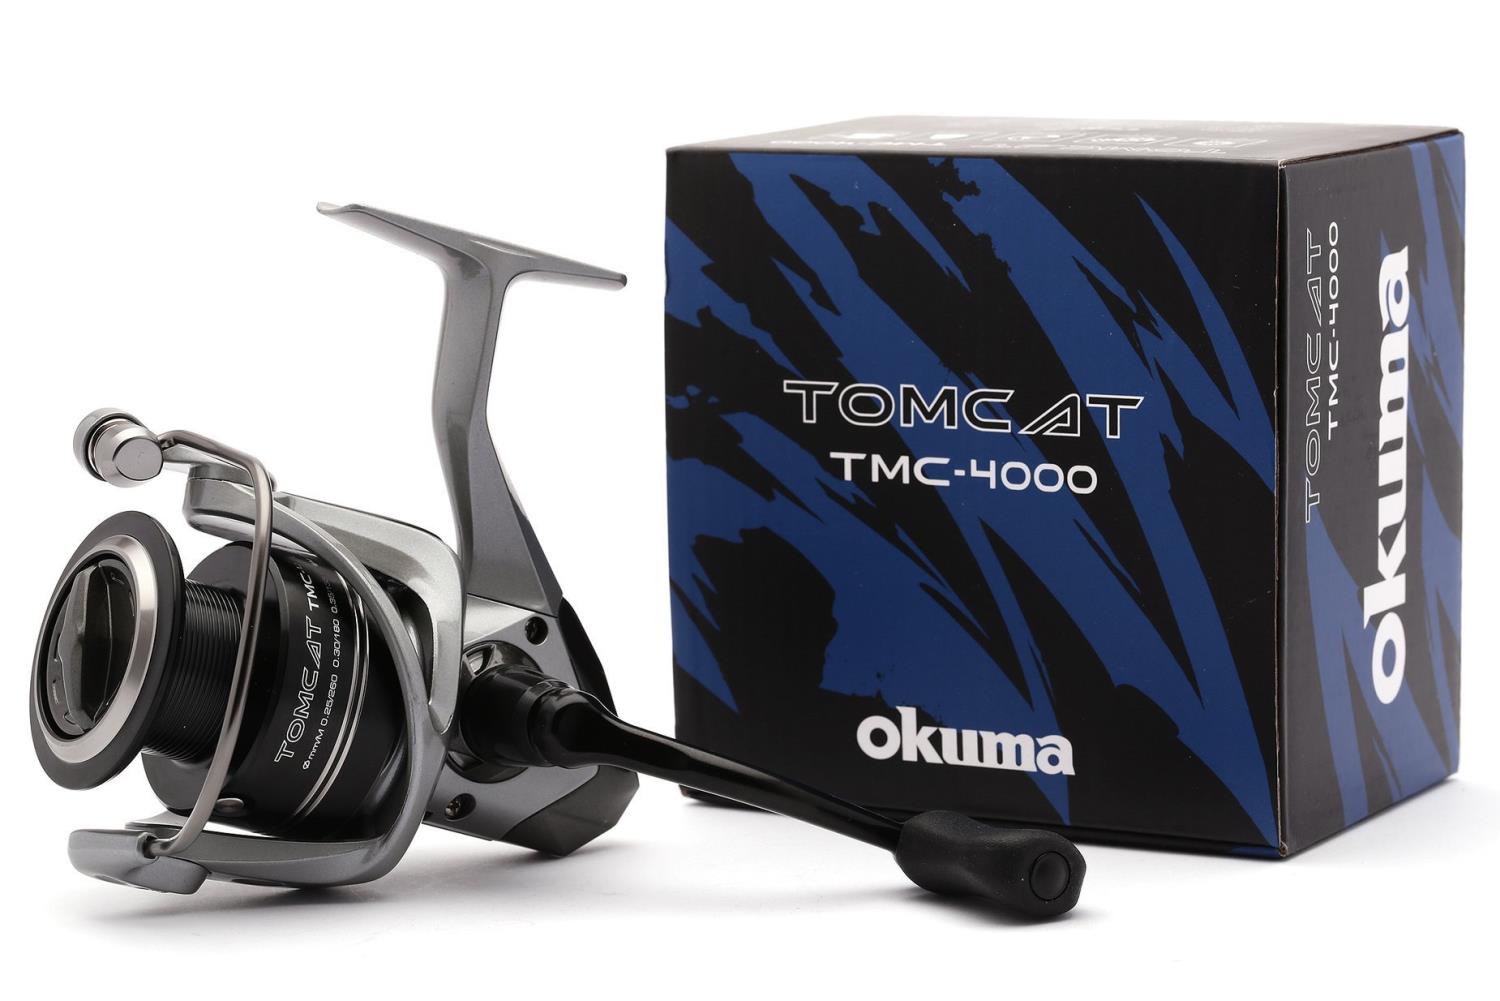 Okuma Tomcat TMC 4000